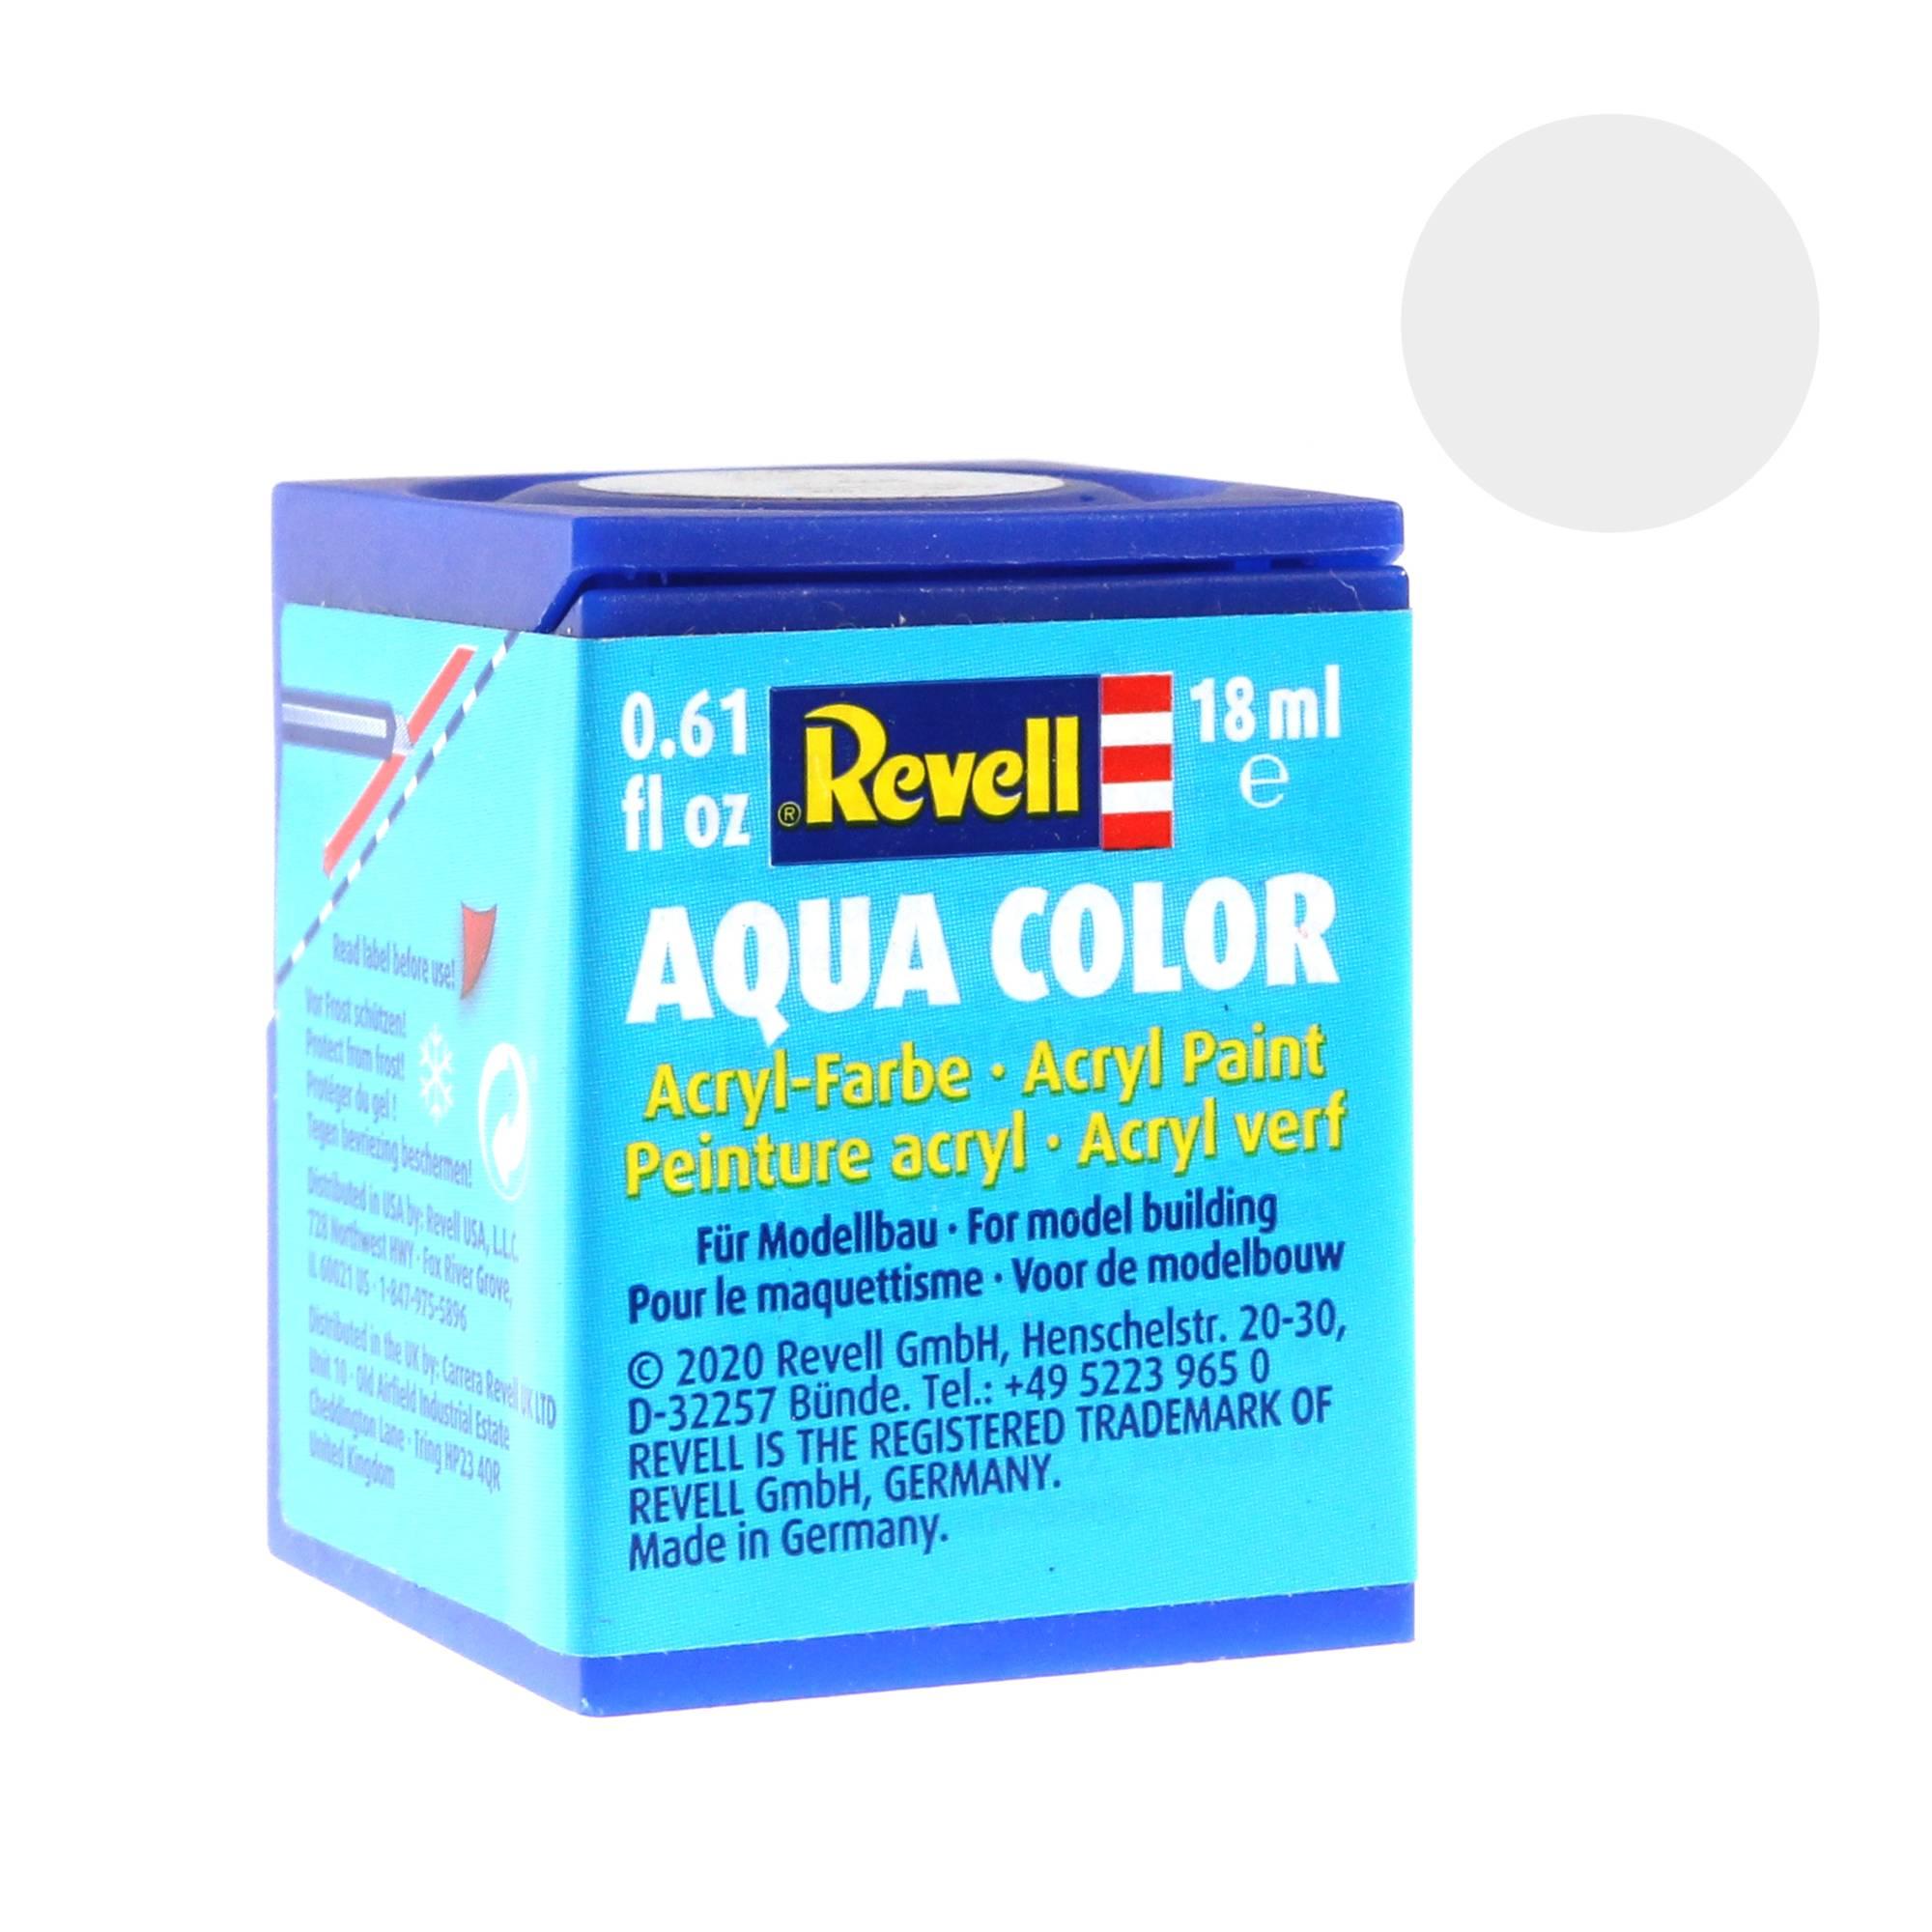 Onderdrukken Bezienswaardigheden bekijken Dosering Revell White Gloss Aqua Colour Acrylic Paint 18ml (104) | Hobbycraft